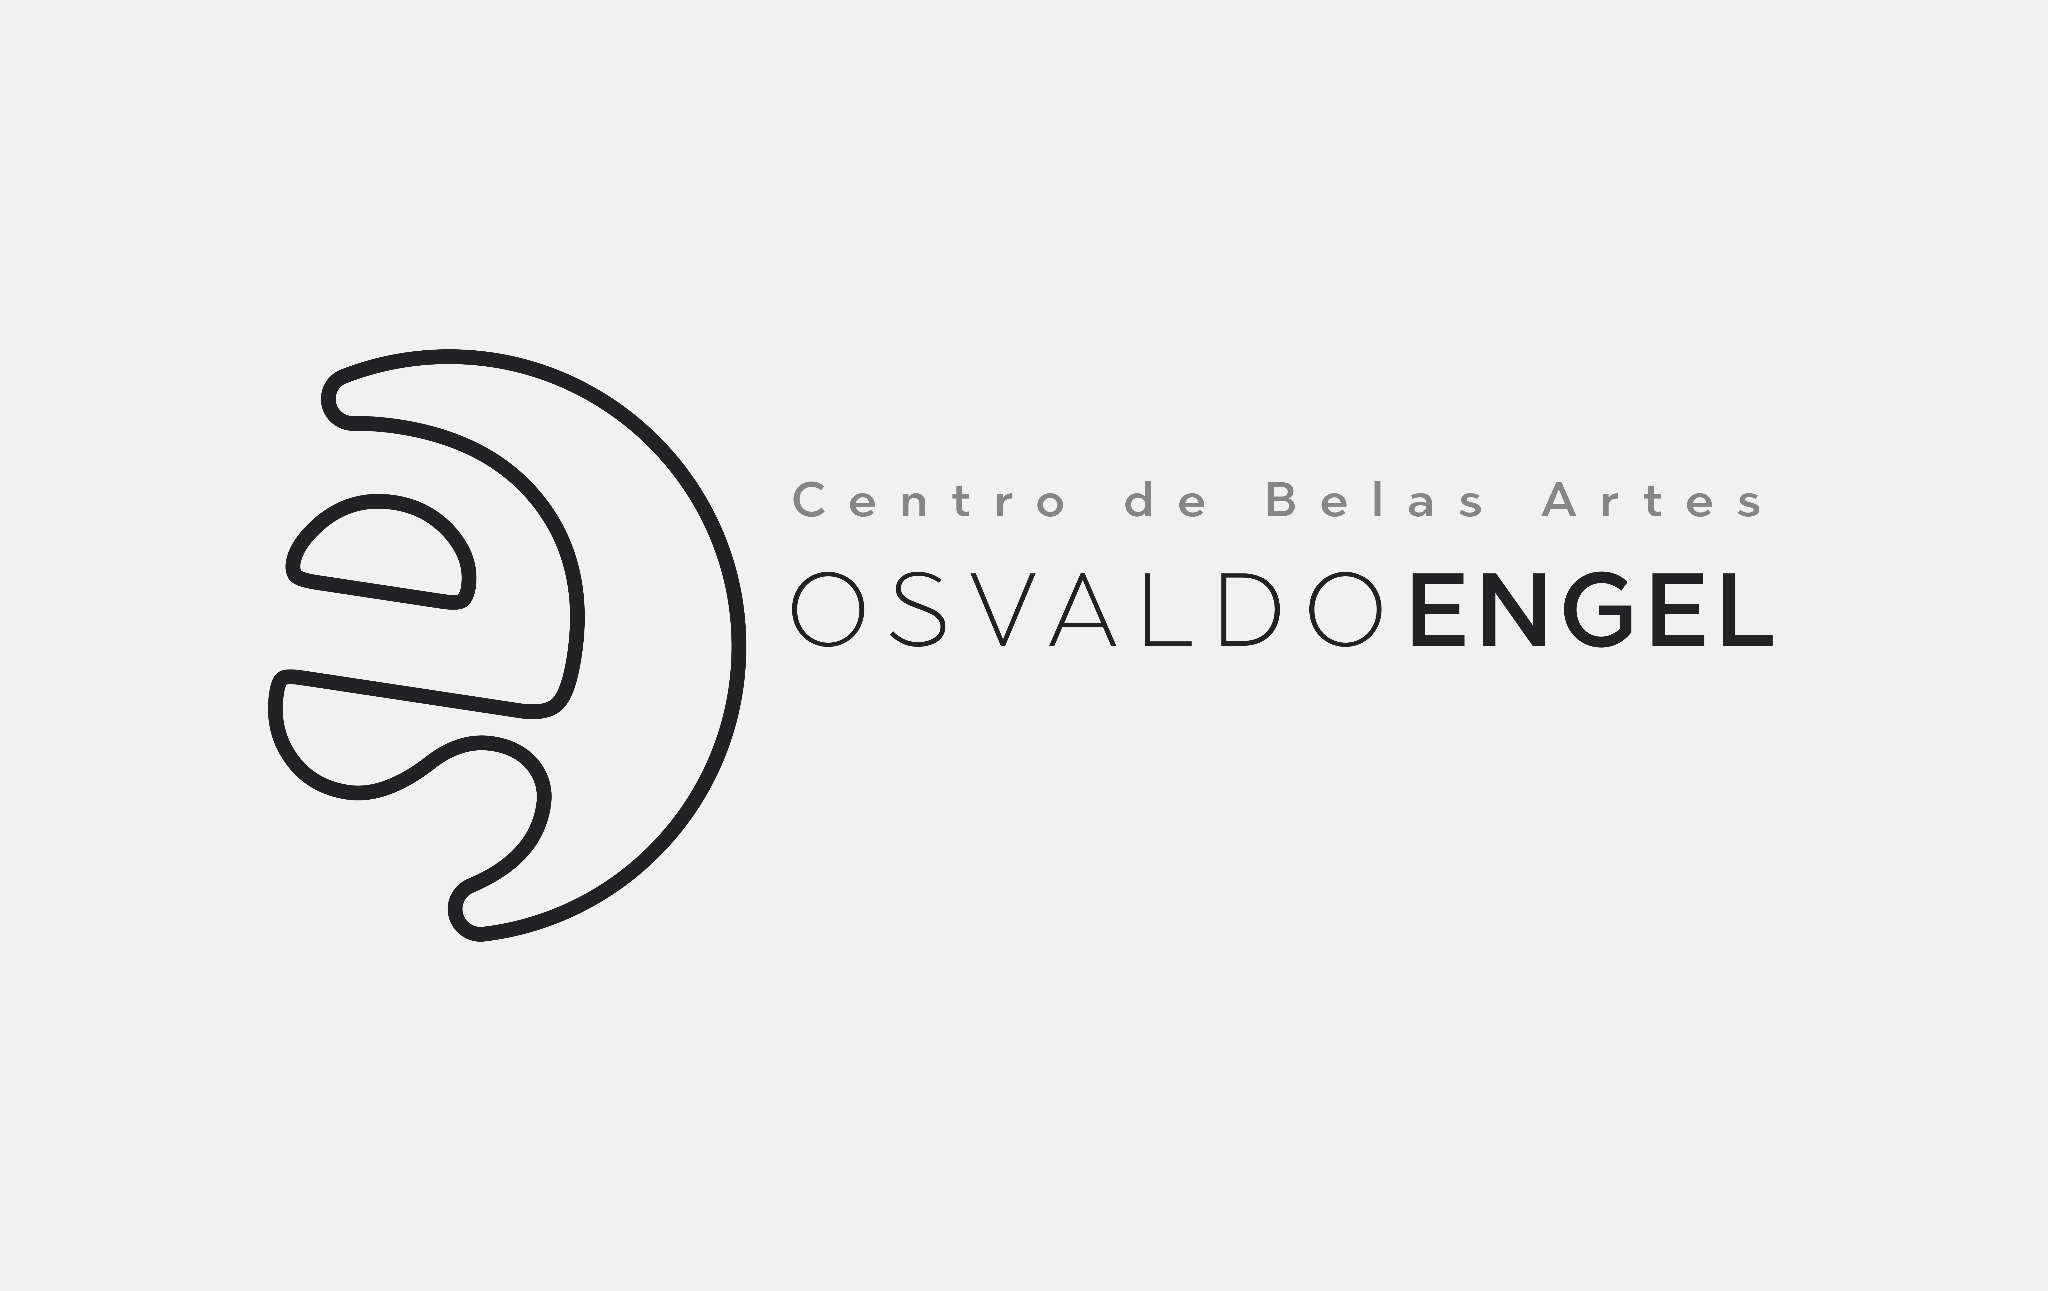  Logotipo criado por ex-estudante ? escolhido para o Centro de Belas Artes Osvaldo Engel